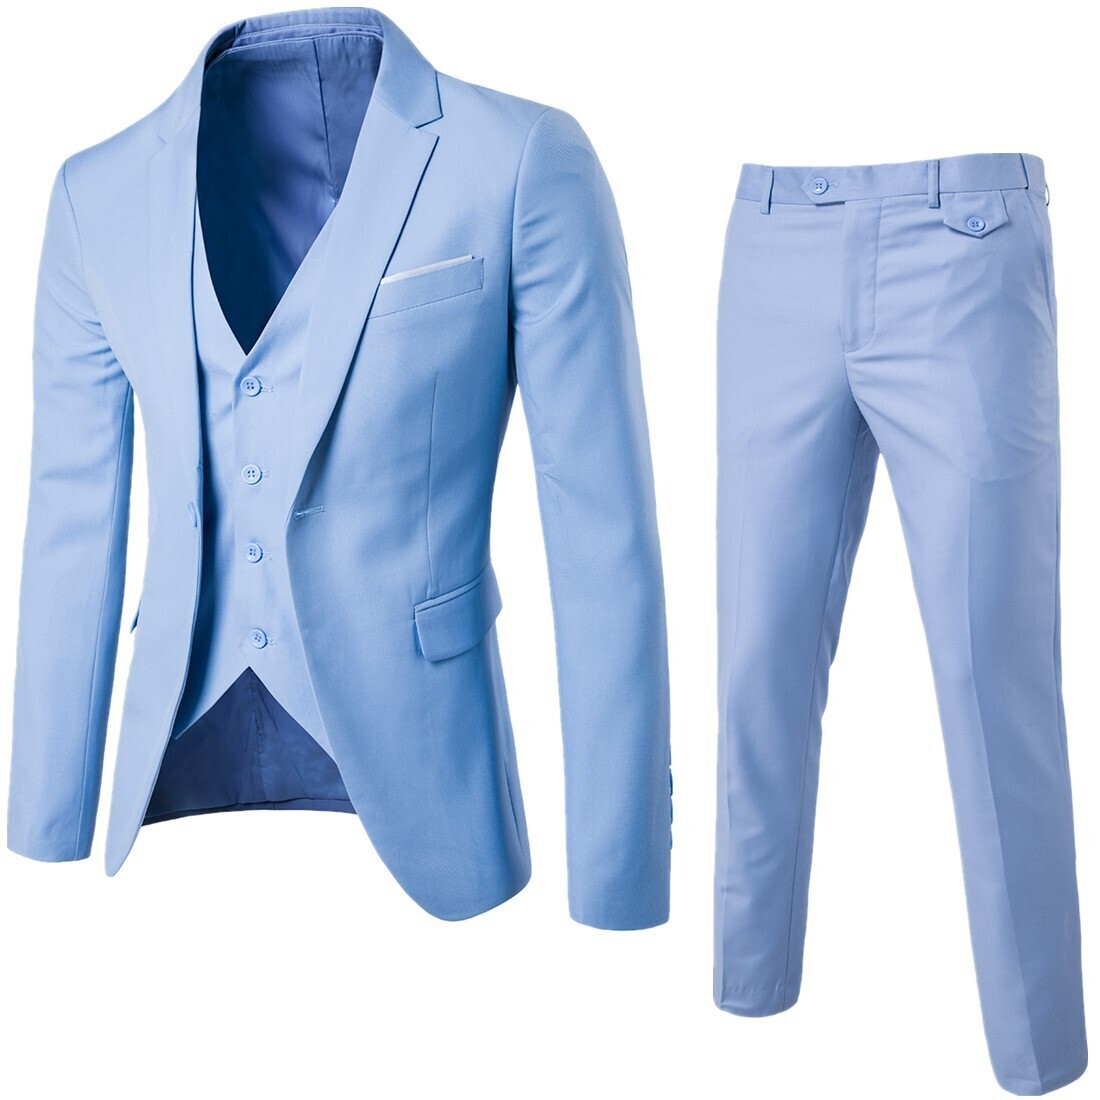 2022 men's fashion Slim suits men's business casual clothing groomsman three-piece suit Blazers jacket pants trousers vest sets